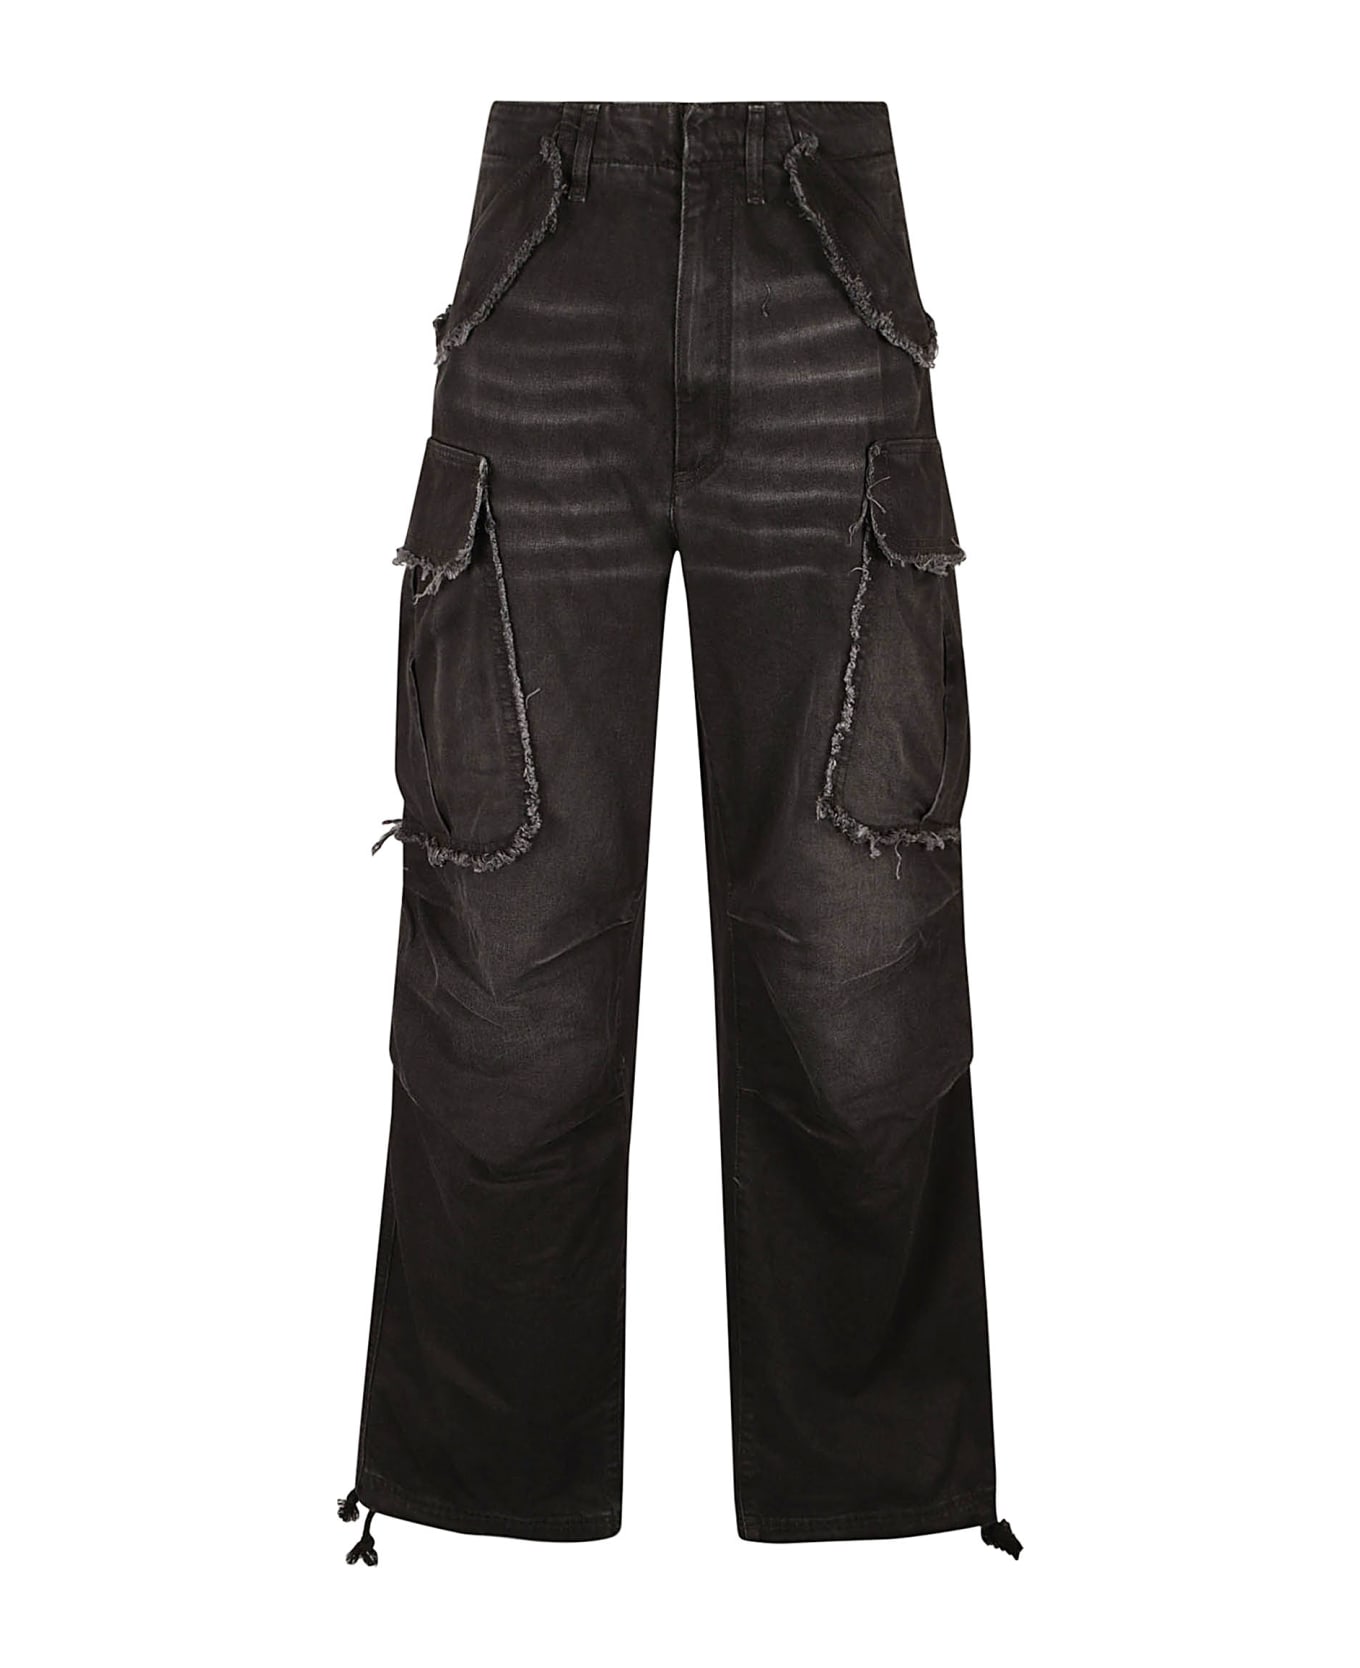 DARKPARK Vivi Jeans - Washed Black